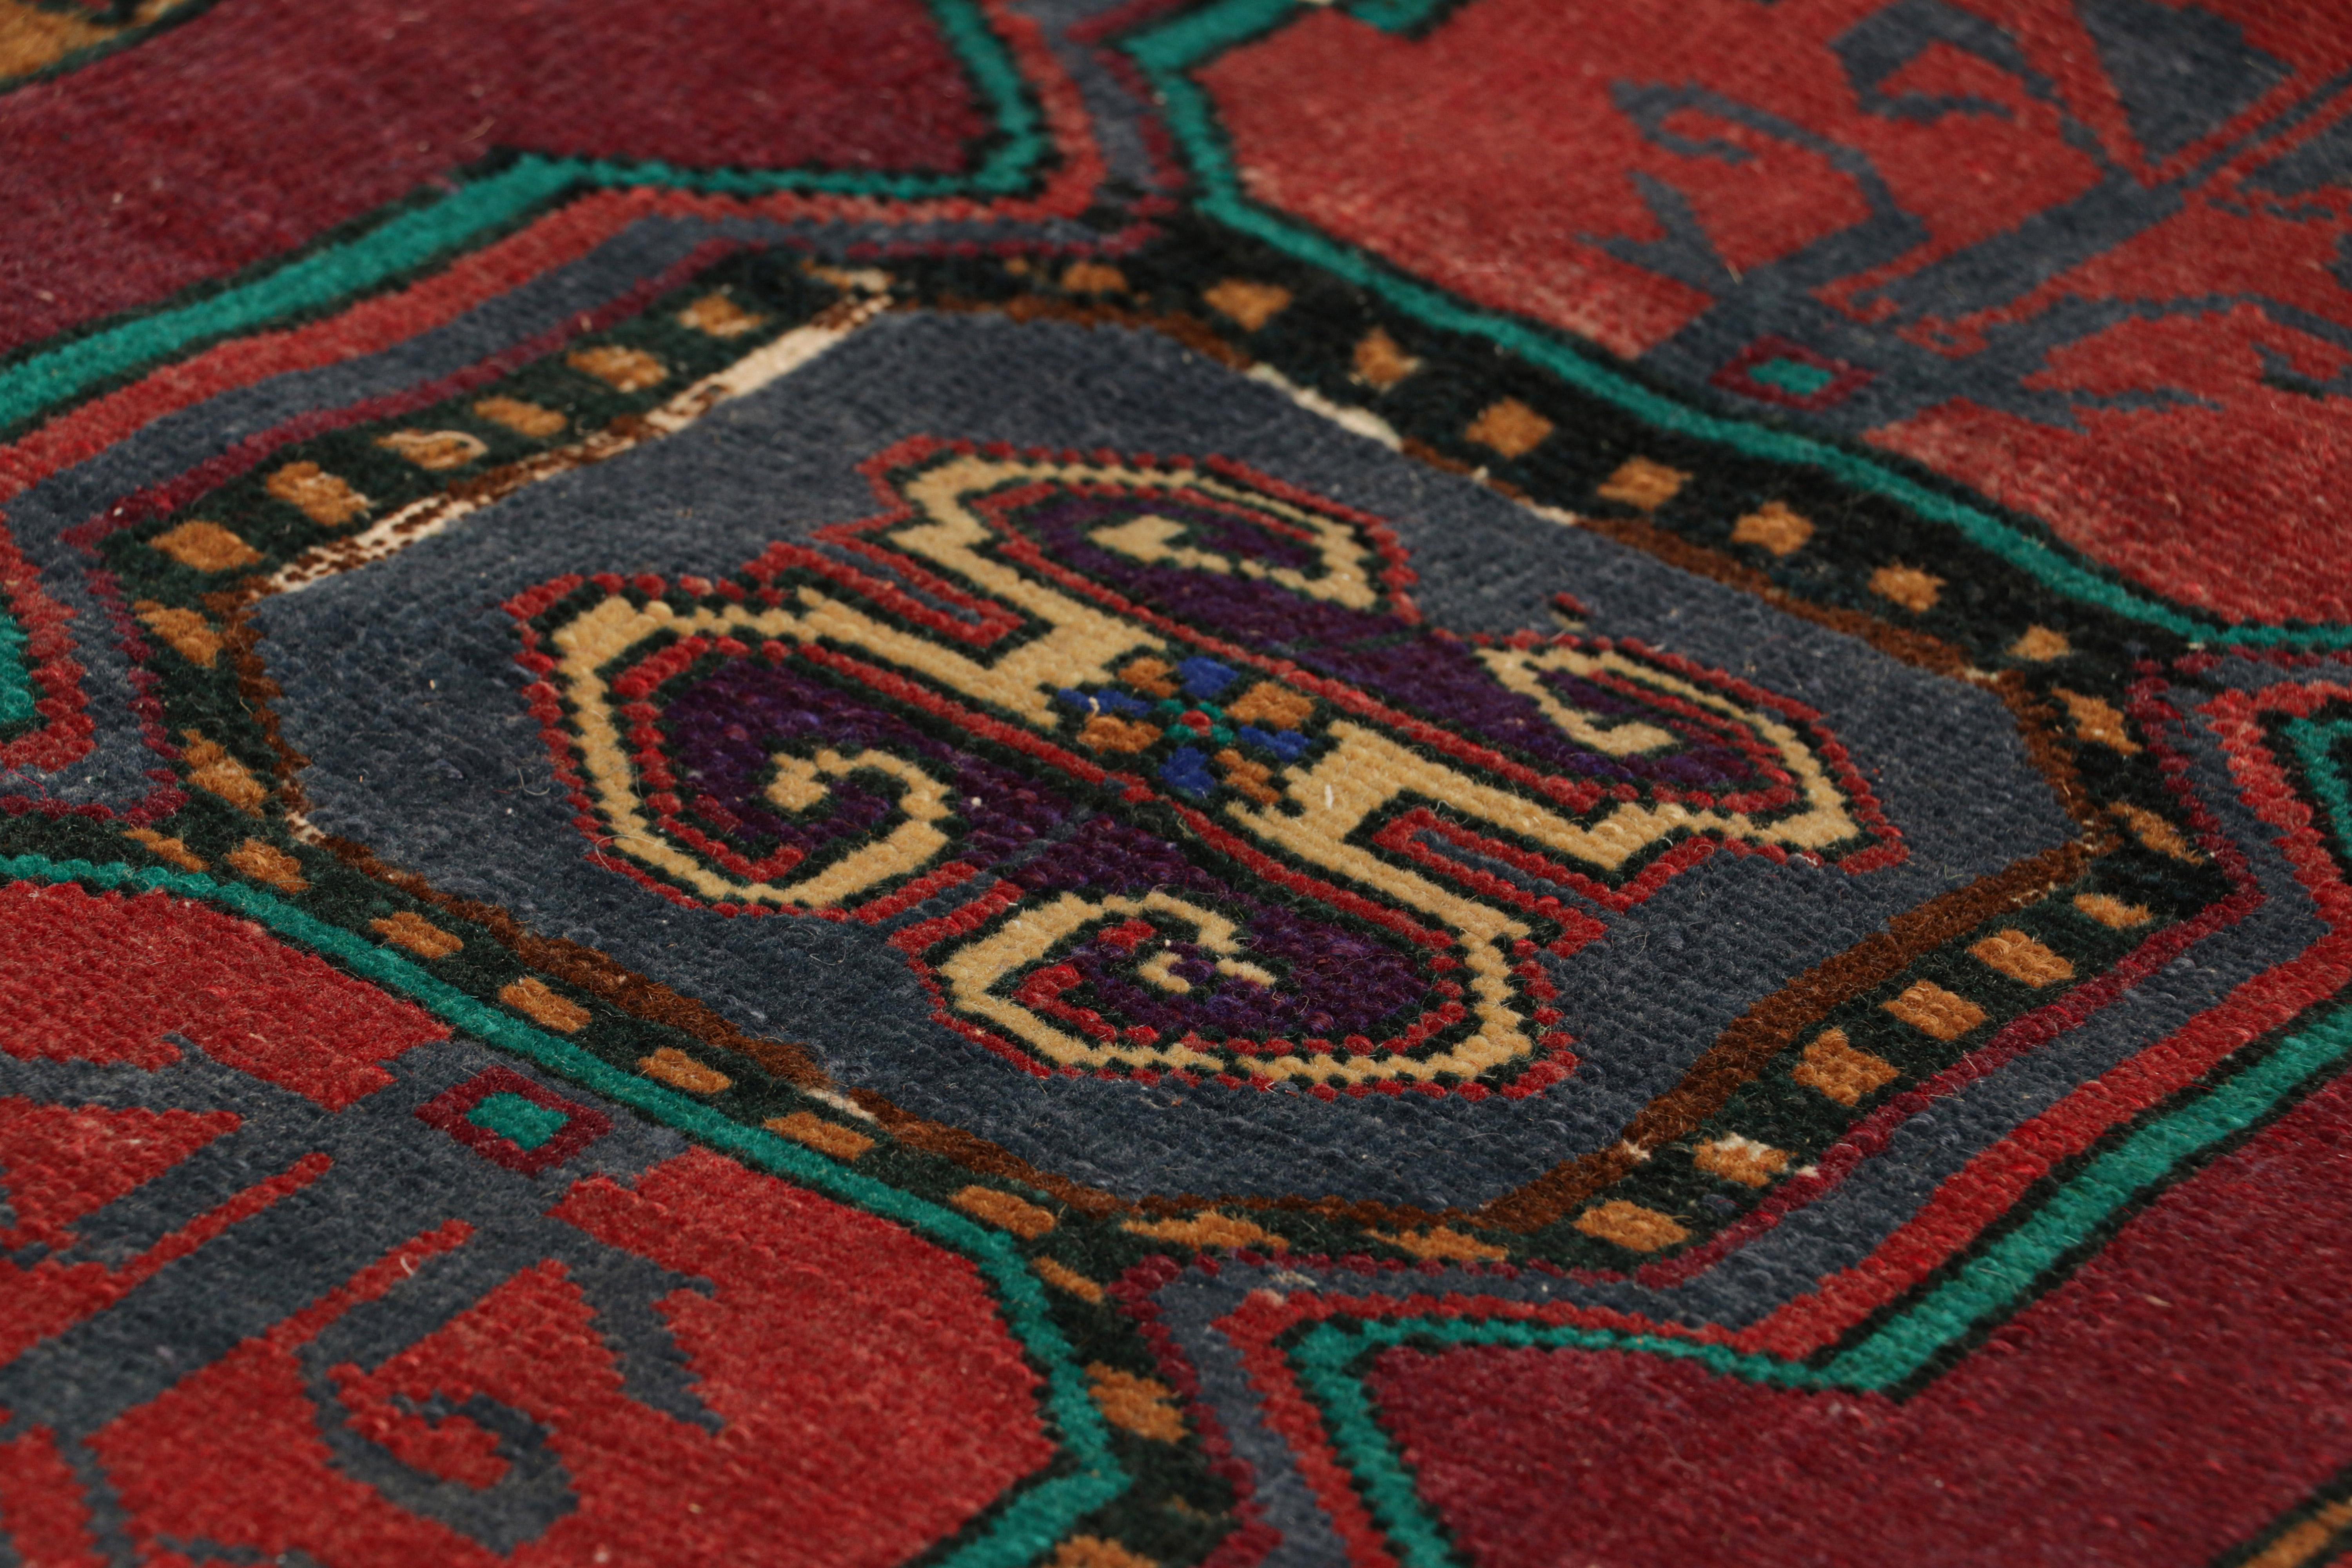 Noué à la main en laine, originaire de Turquie vers 1950-1960, ce tapis vintage 2x3 de taille cadeau fait partie d'un ensemble très spécial de jumeaux issus d'une collection exceptionnelle de tapis Oushak du milieu du siècle, nouvellement introduite